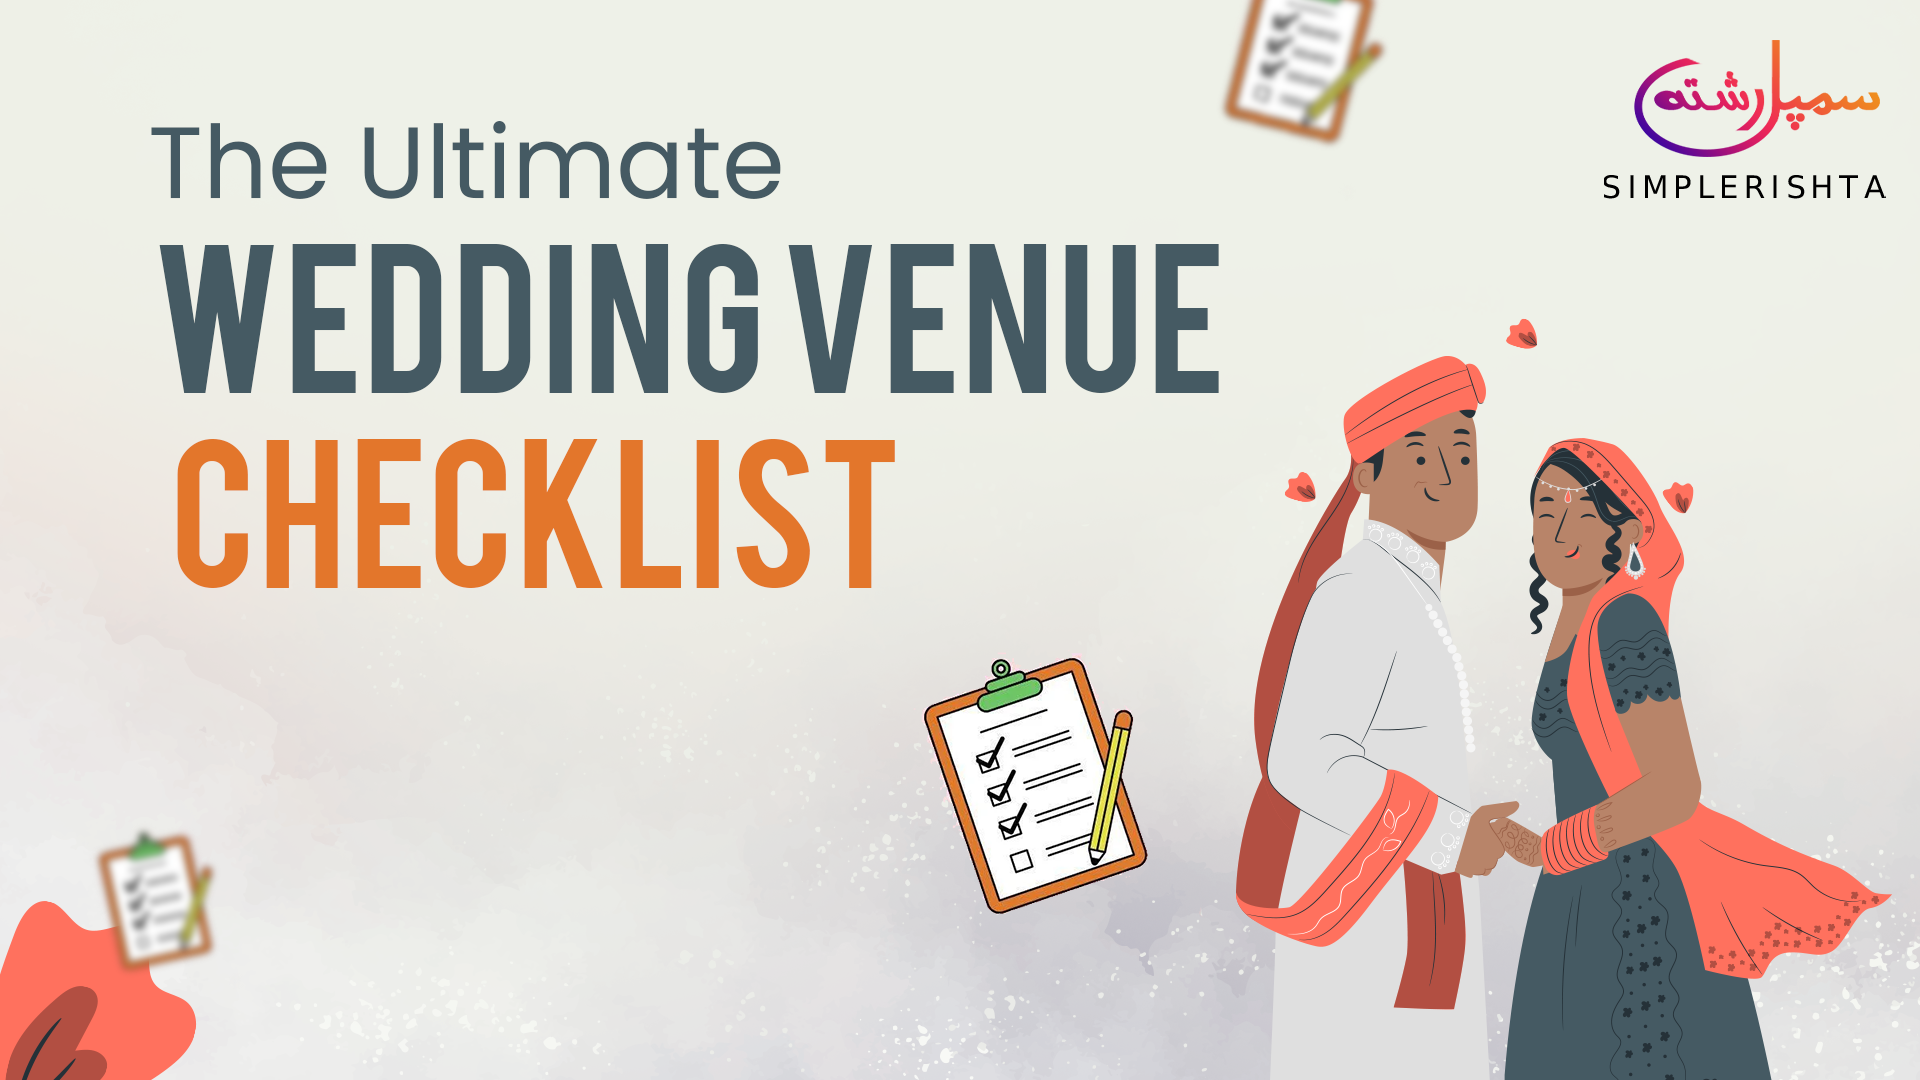 The Ultimate Wedding Venue Checklist